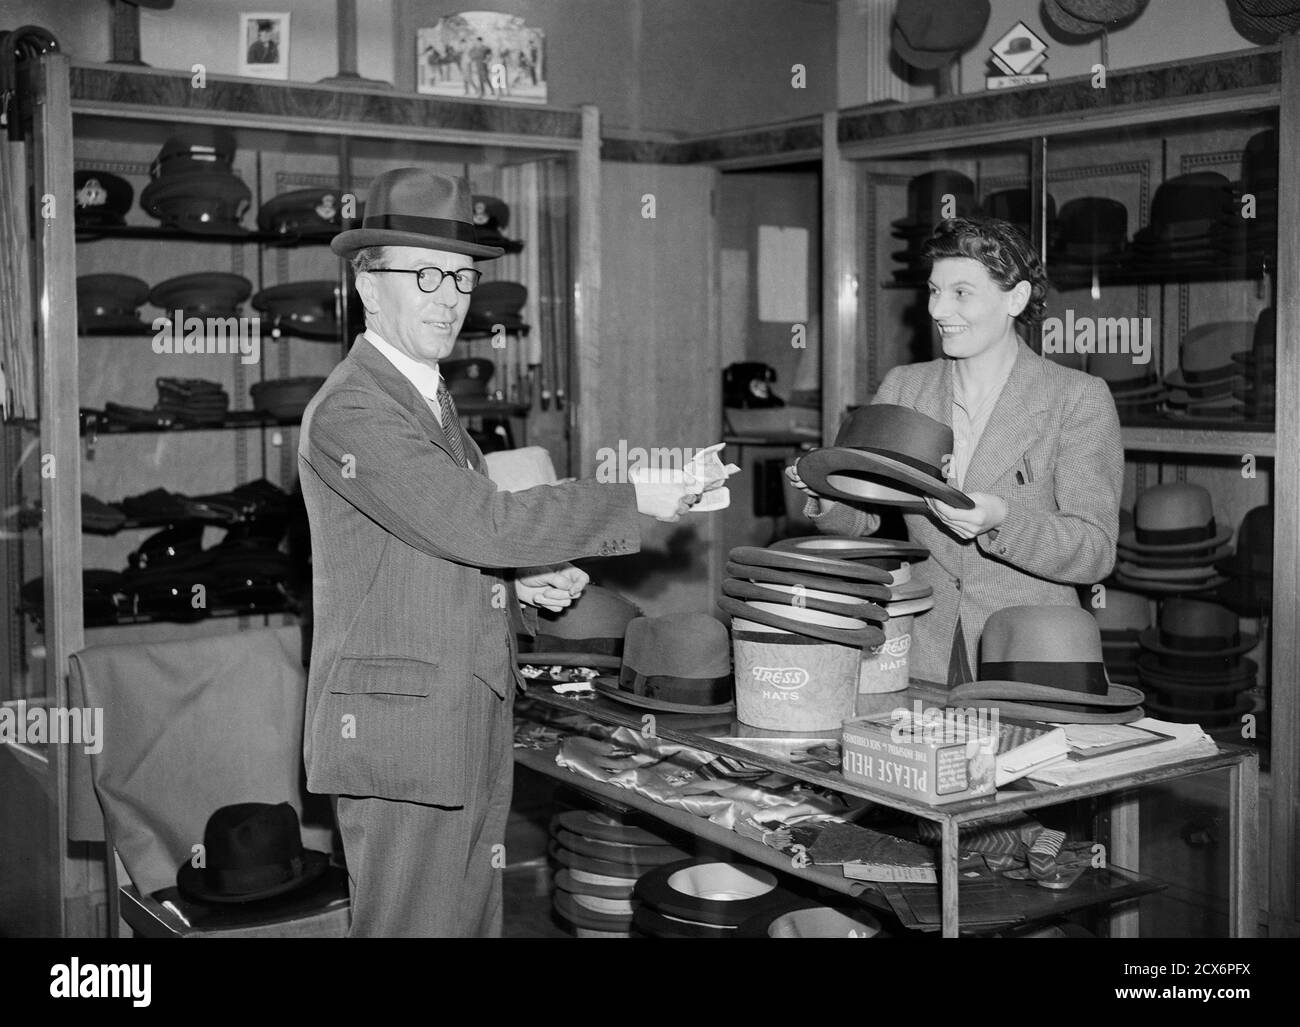 Un homme achète un chapeau à Betress Hats, sur Stamford Street à Blackfriars, Londres, en 1938 Banque D'Images